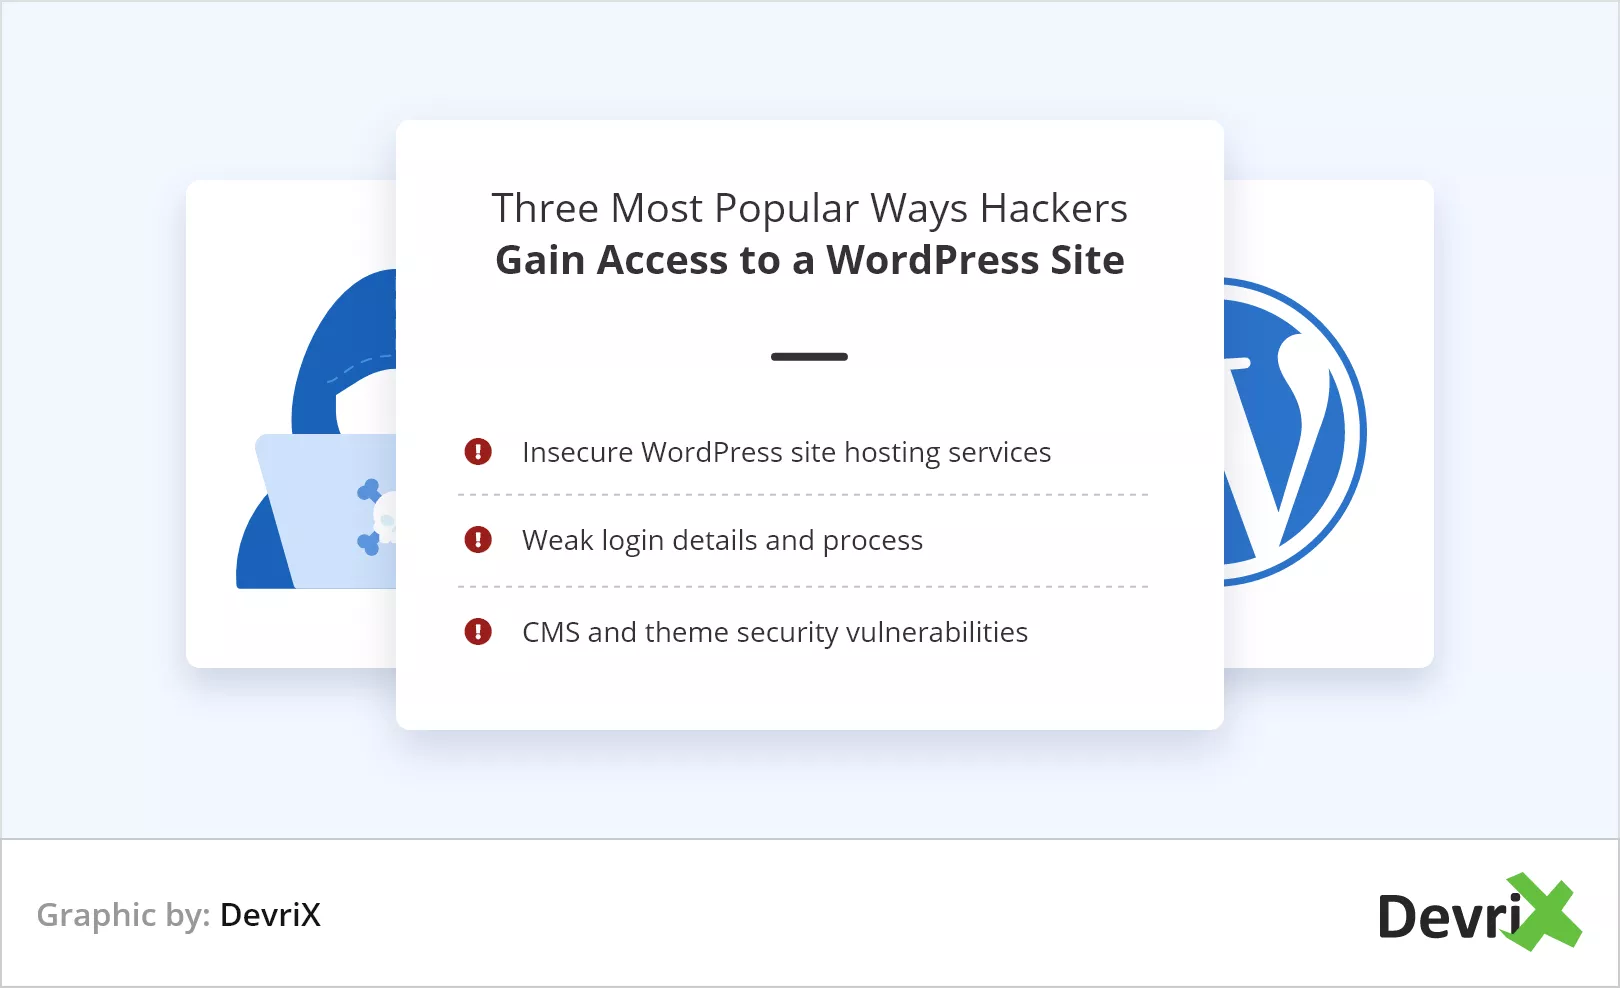 Die drei beliebtesten Möglichkeiten, wie Hacker Zugriff erhalten